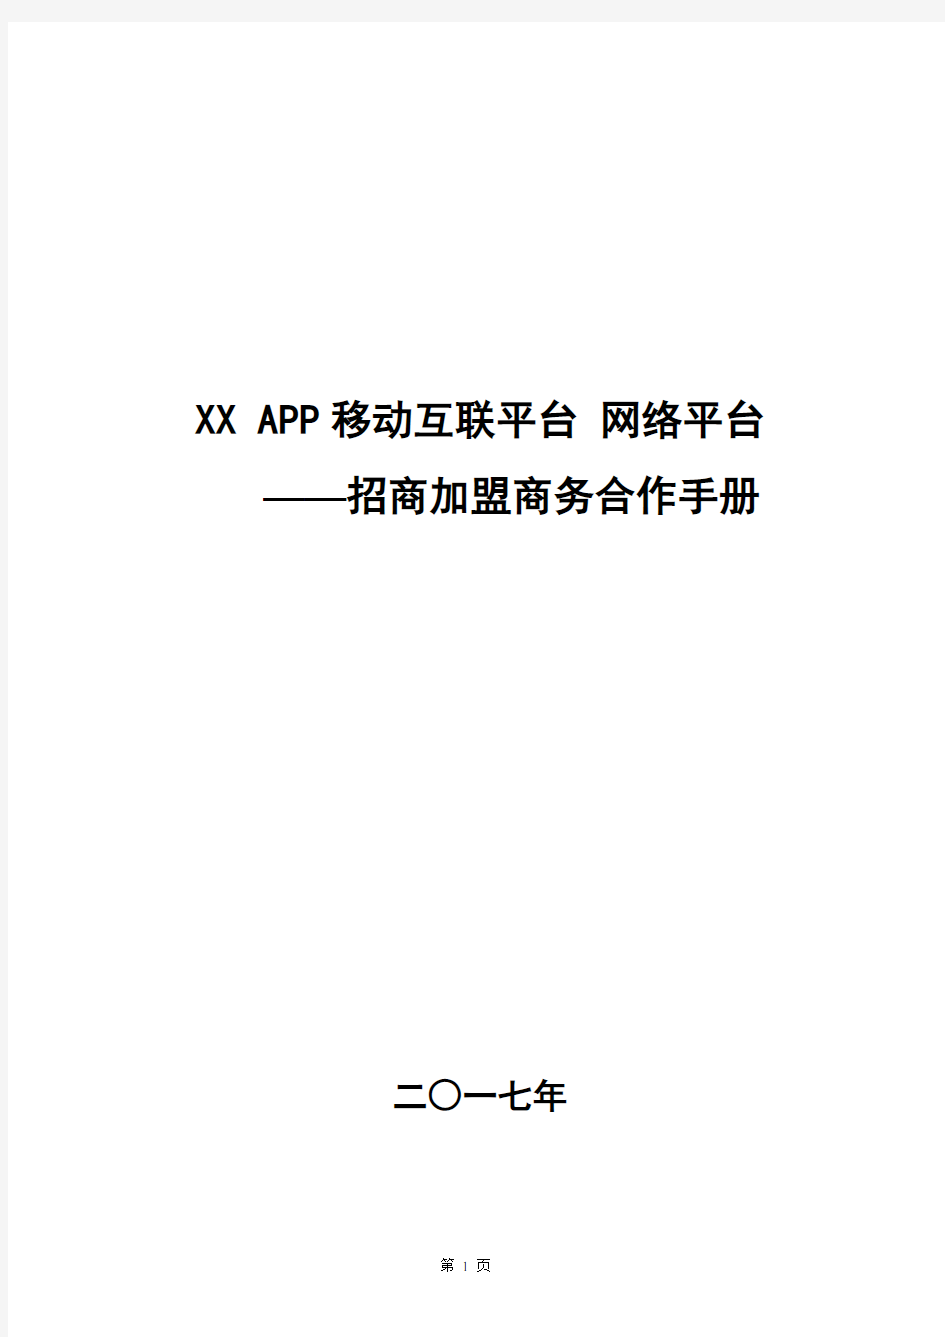 XX APP 电商网络平台招商手册